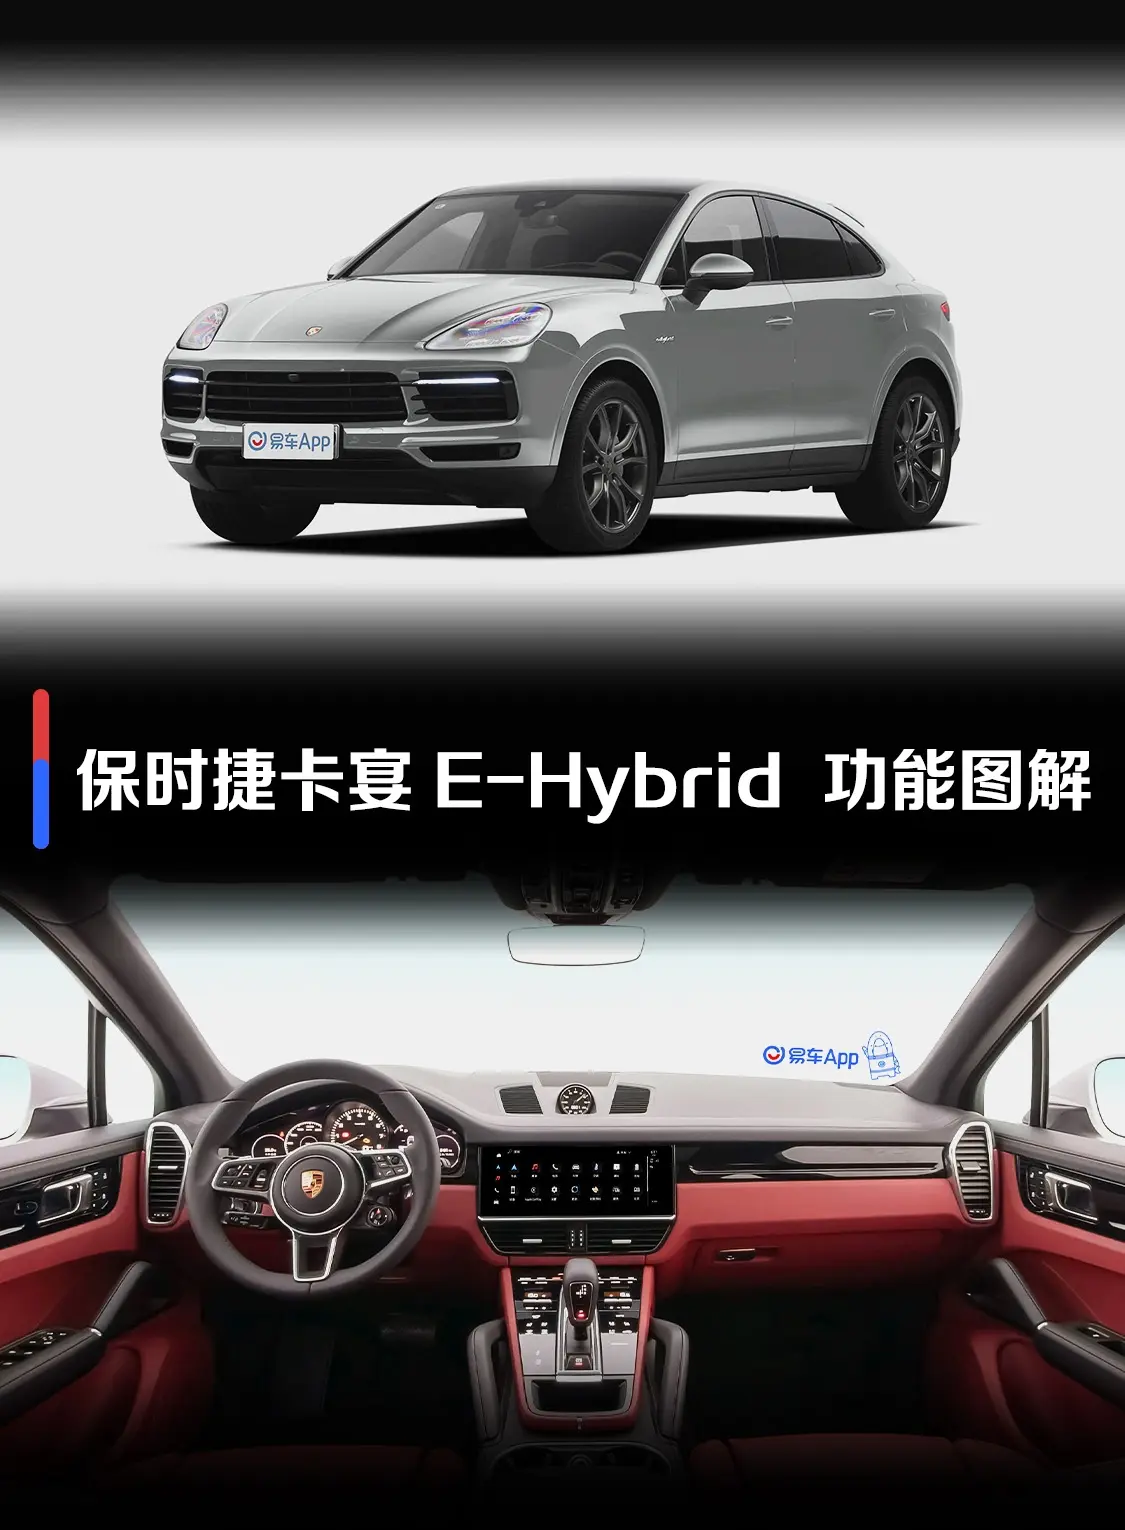 Cayenne E-Hybrid